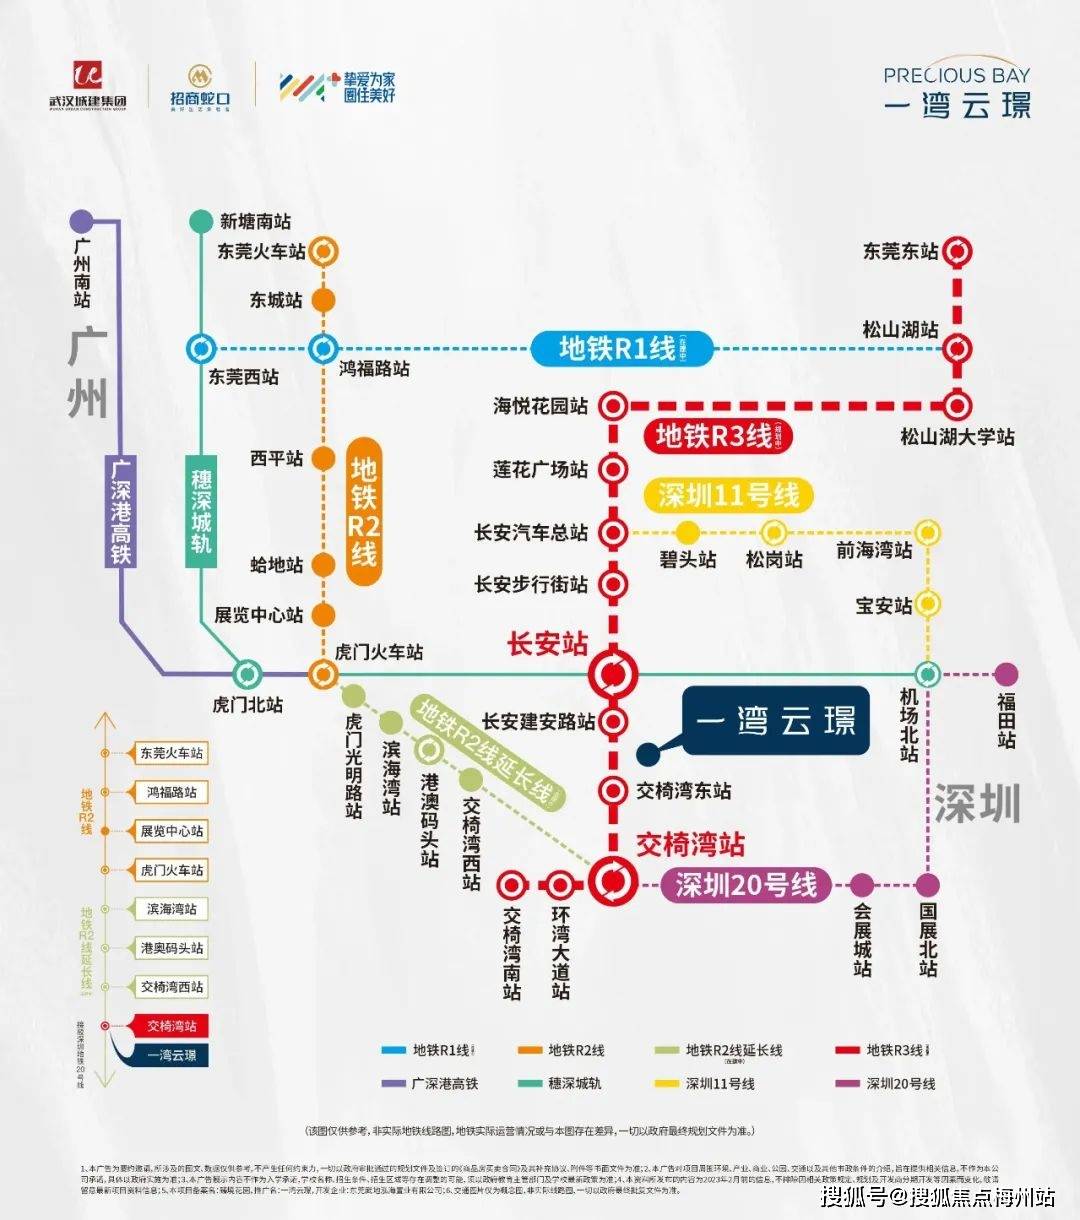 且接驳深圳11号线,直达深圳;穗莞深城际长安站已通车,北接广州,南通